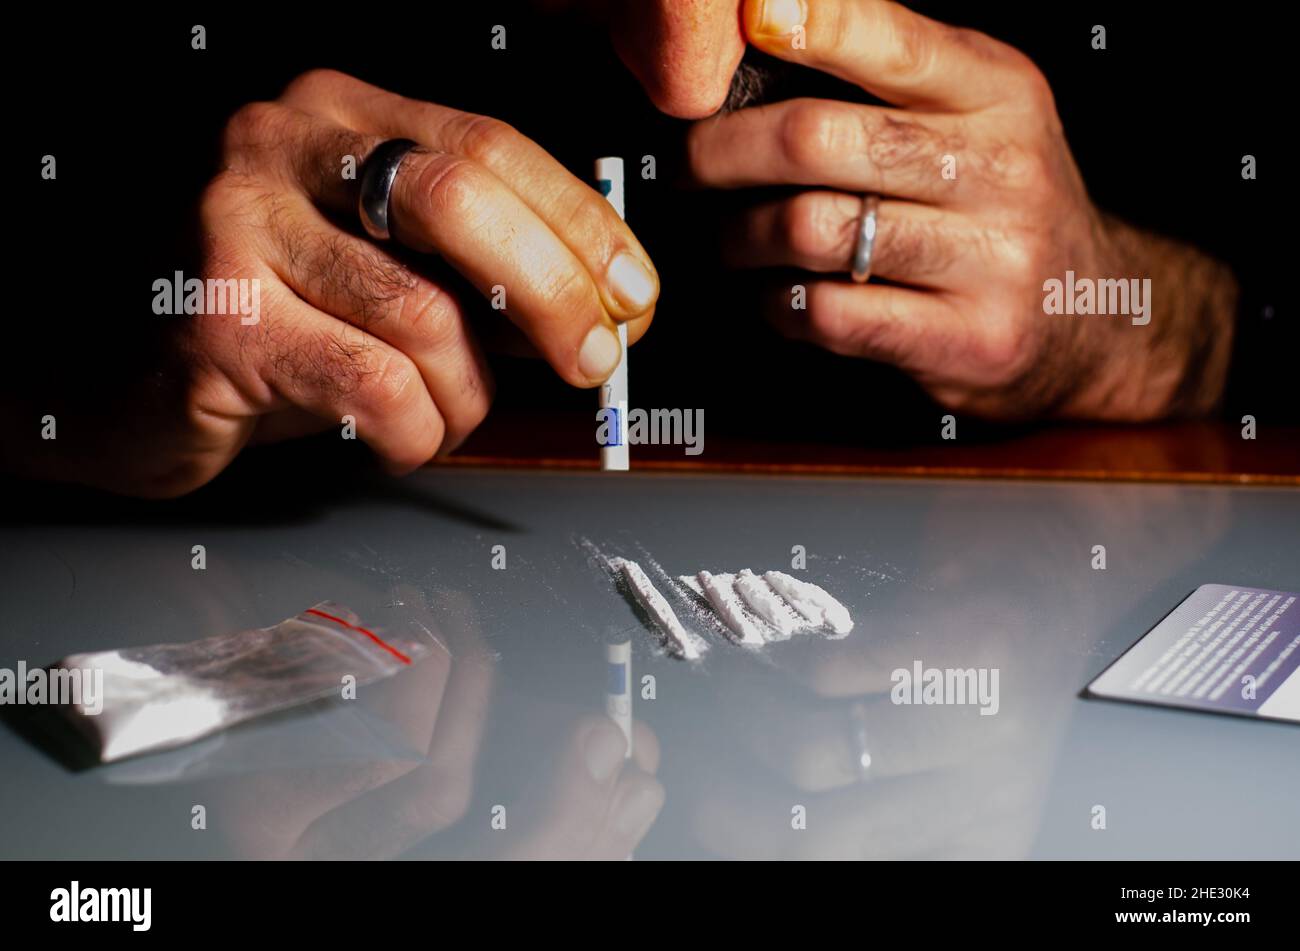 Cet homme ronfle la poudre de cocaïne avec billet de banque roulé.Concept de narcotiques. Banque D'Images